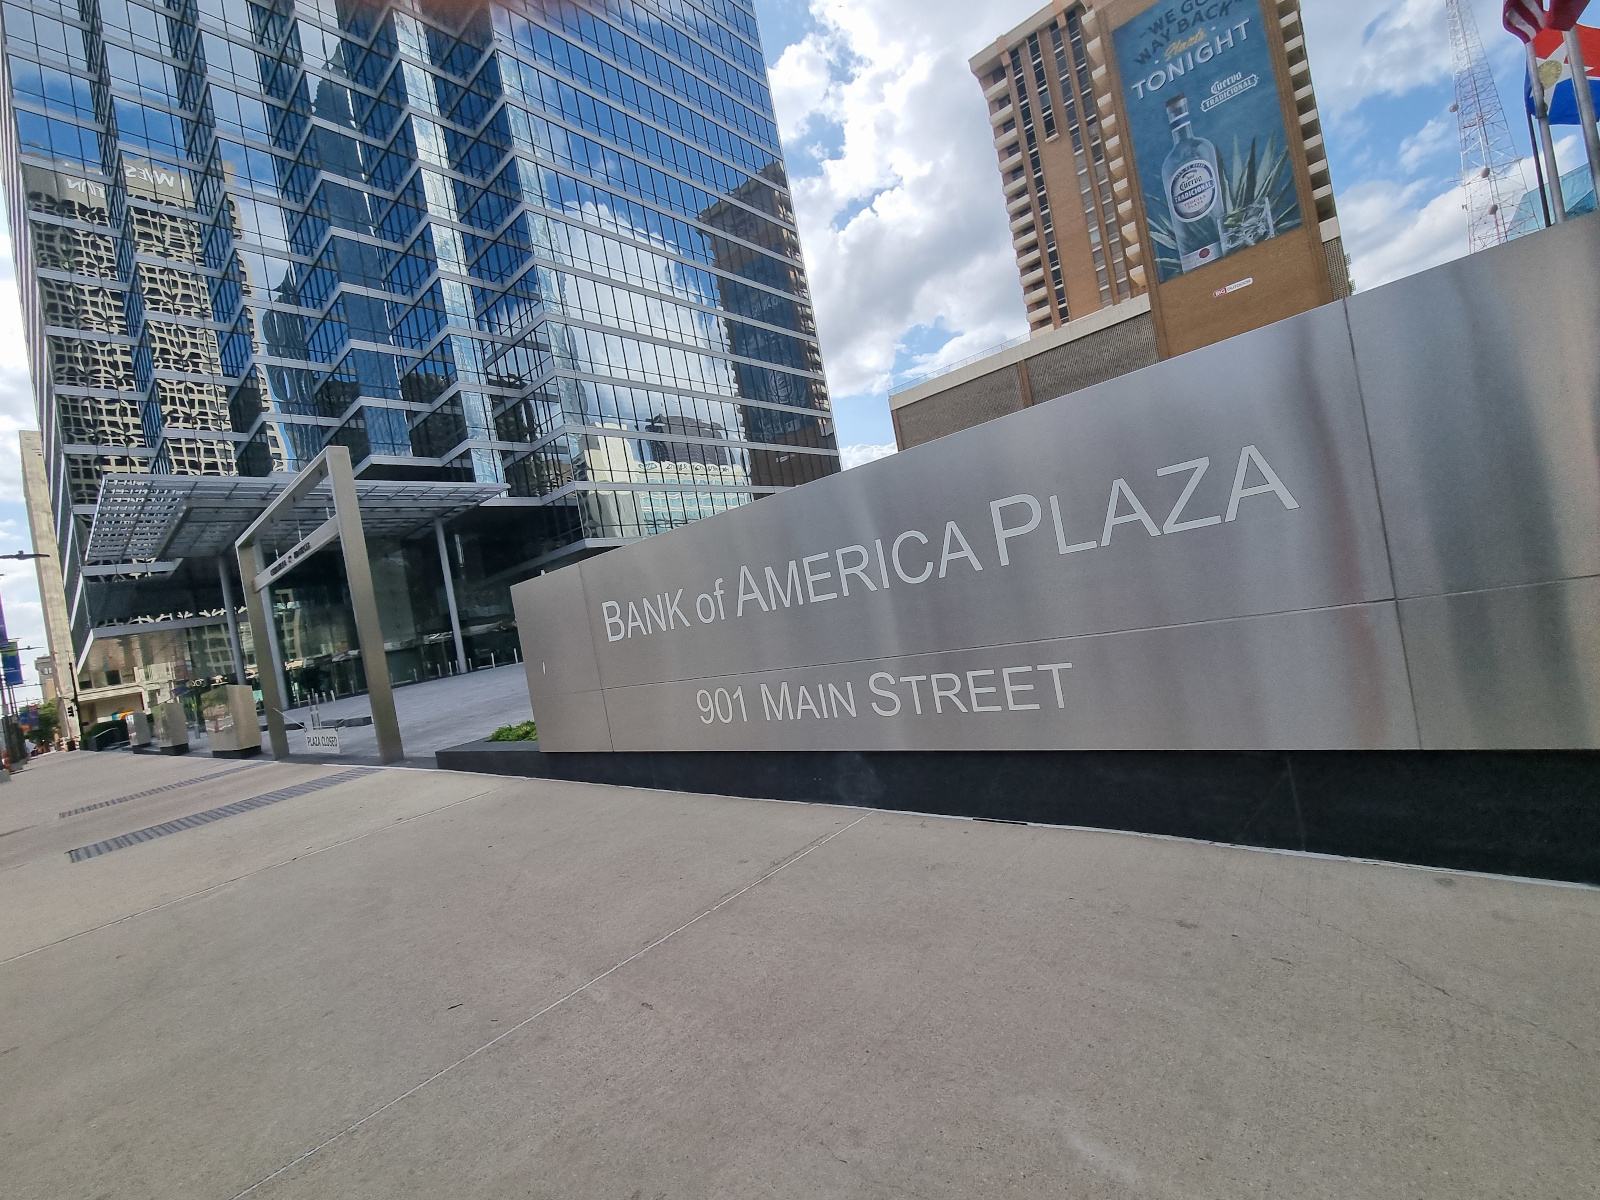 Die Bank of America Corporation ist eine US-amerikanische Grossbank mit Hauptsitz in Charlotte, North Carolina. Das Unternehmen war seit Juli 2006 zeitweise das grösste Kreditinstitut der Vereinigten Staaten.